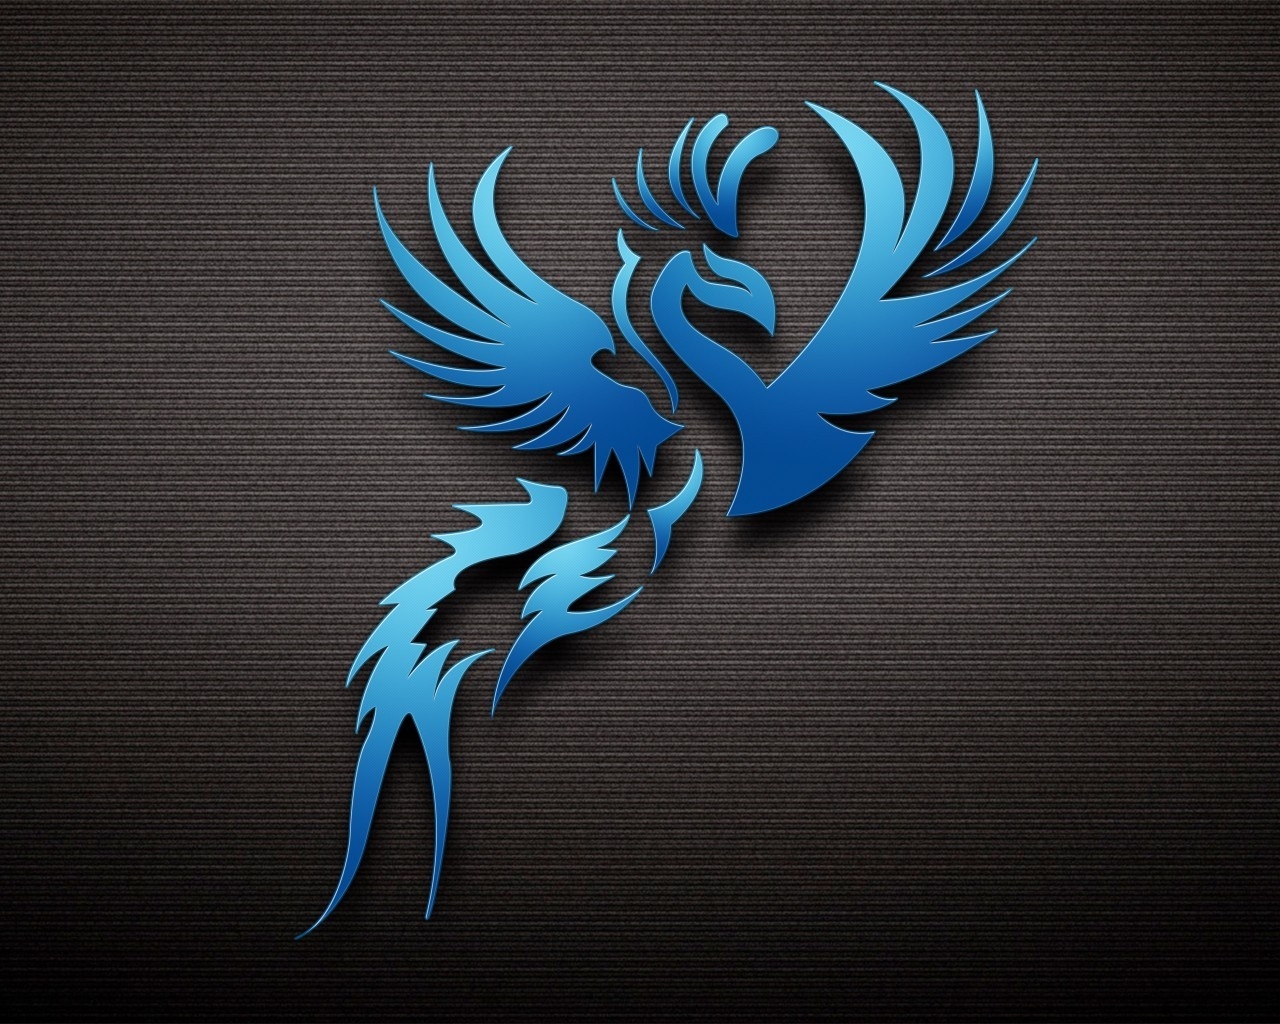 Dark Blue Bird for 1280 x 1024 resolution